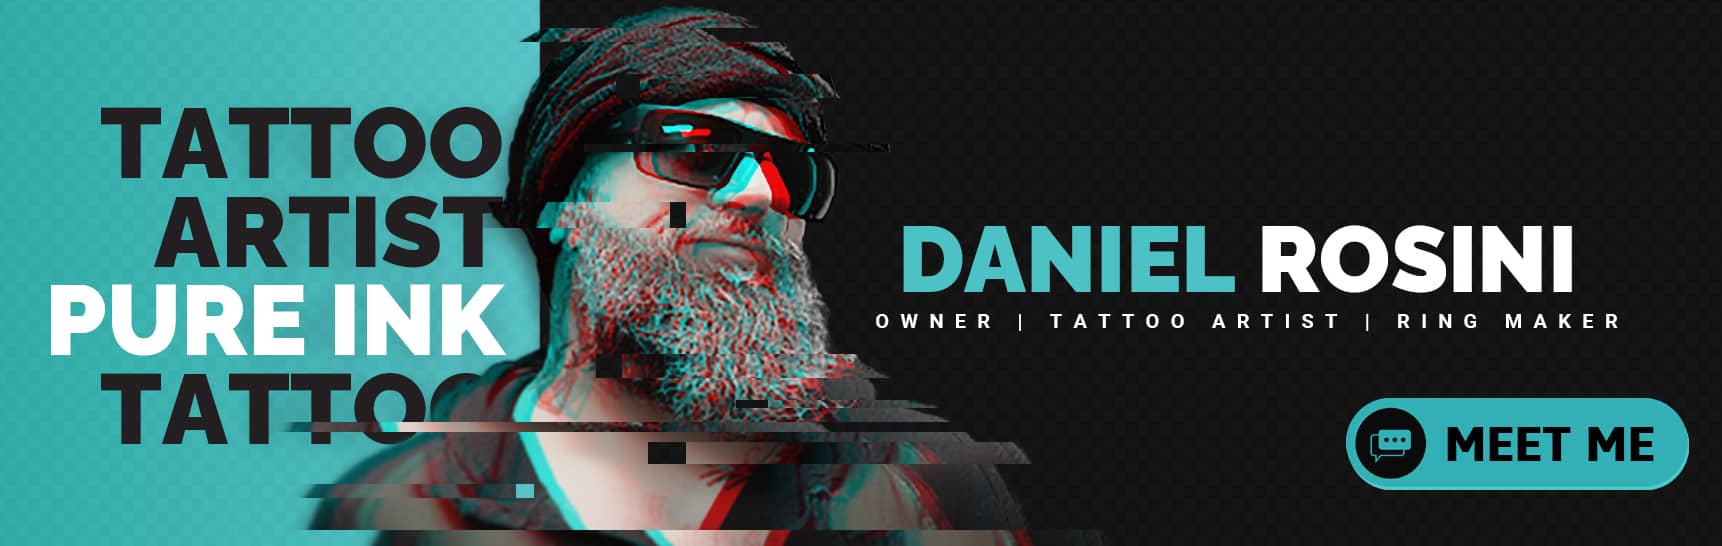 Daniel Rosini - Tattoo Artist - Business Owner - Ring Maker - Human Bone Jewelry - Pure Ink Tattoo Studio NJ